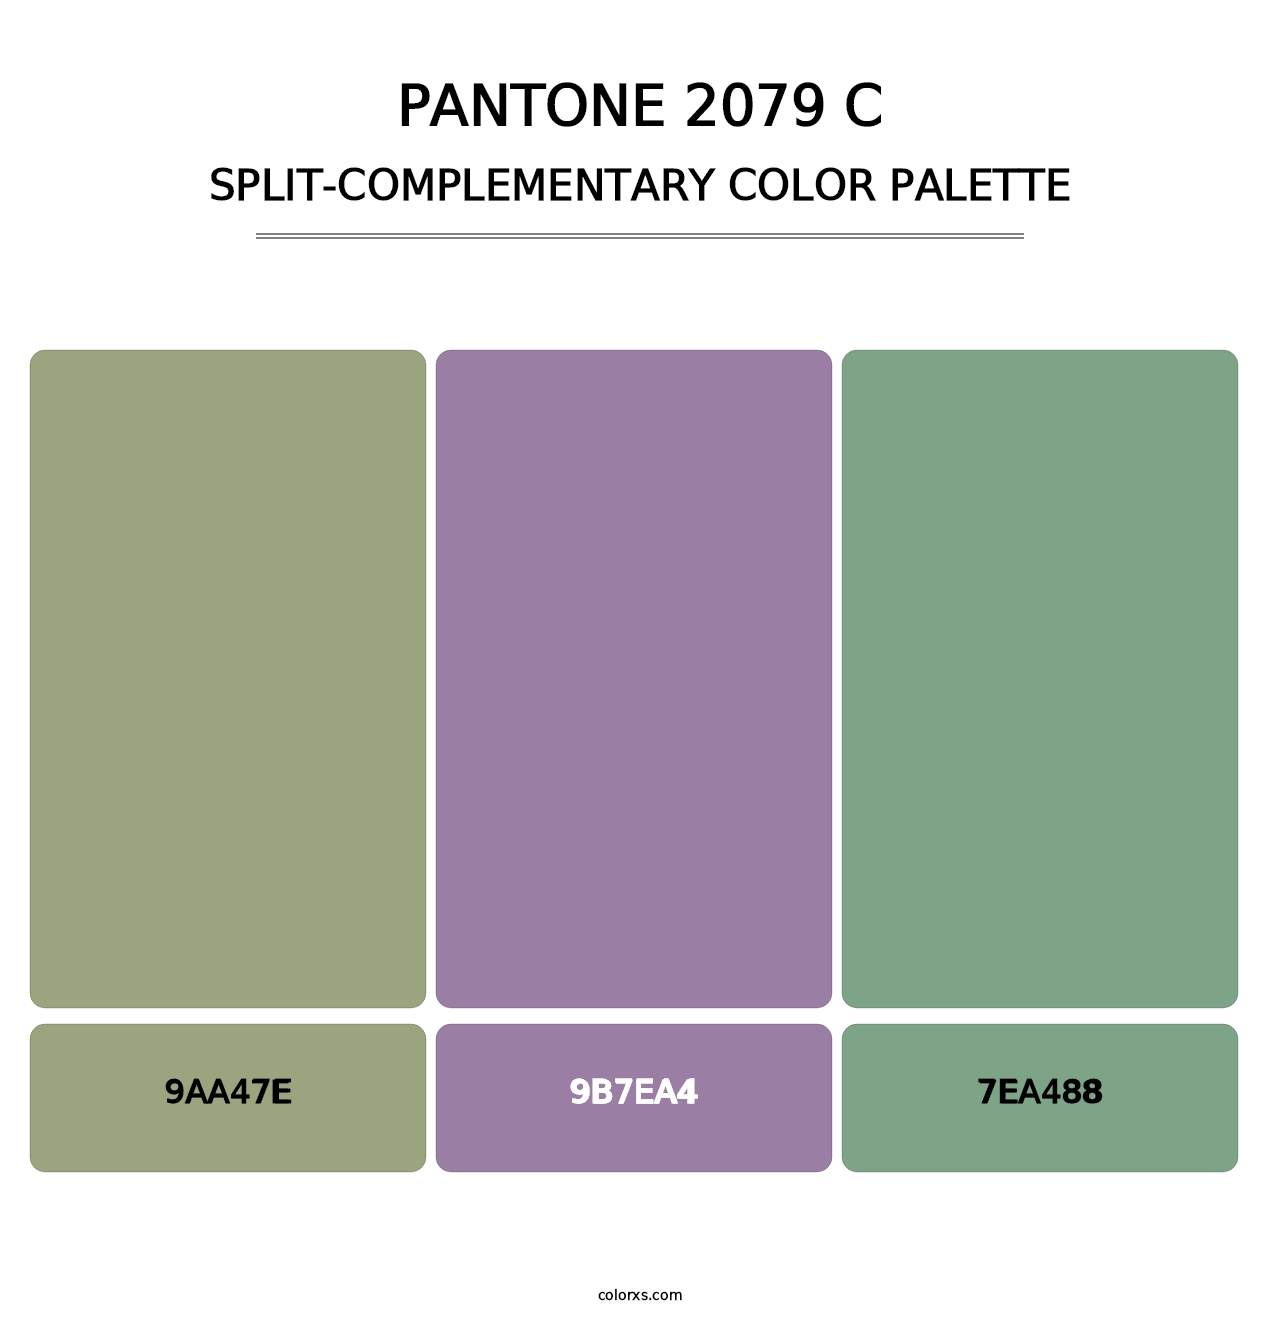 PANTONE 2079 C - Split-Complementary Color Palette